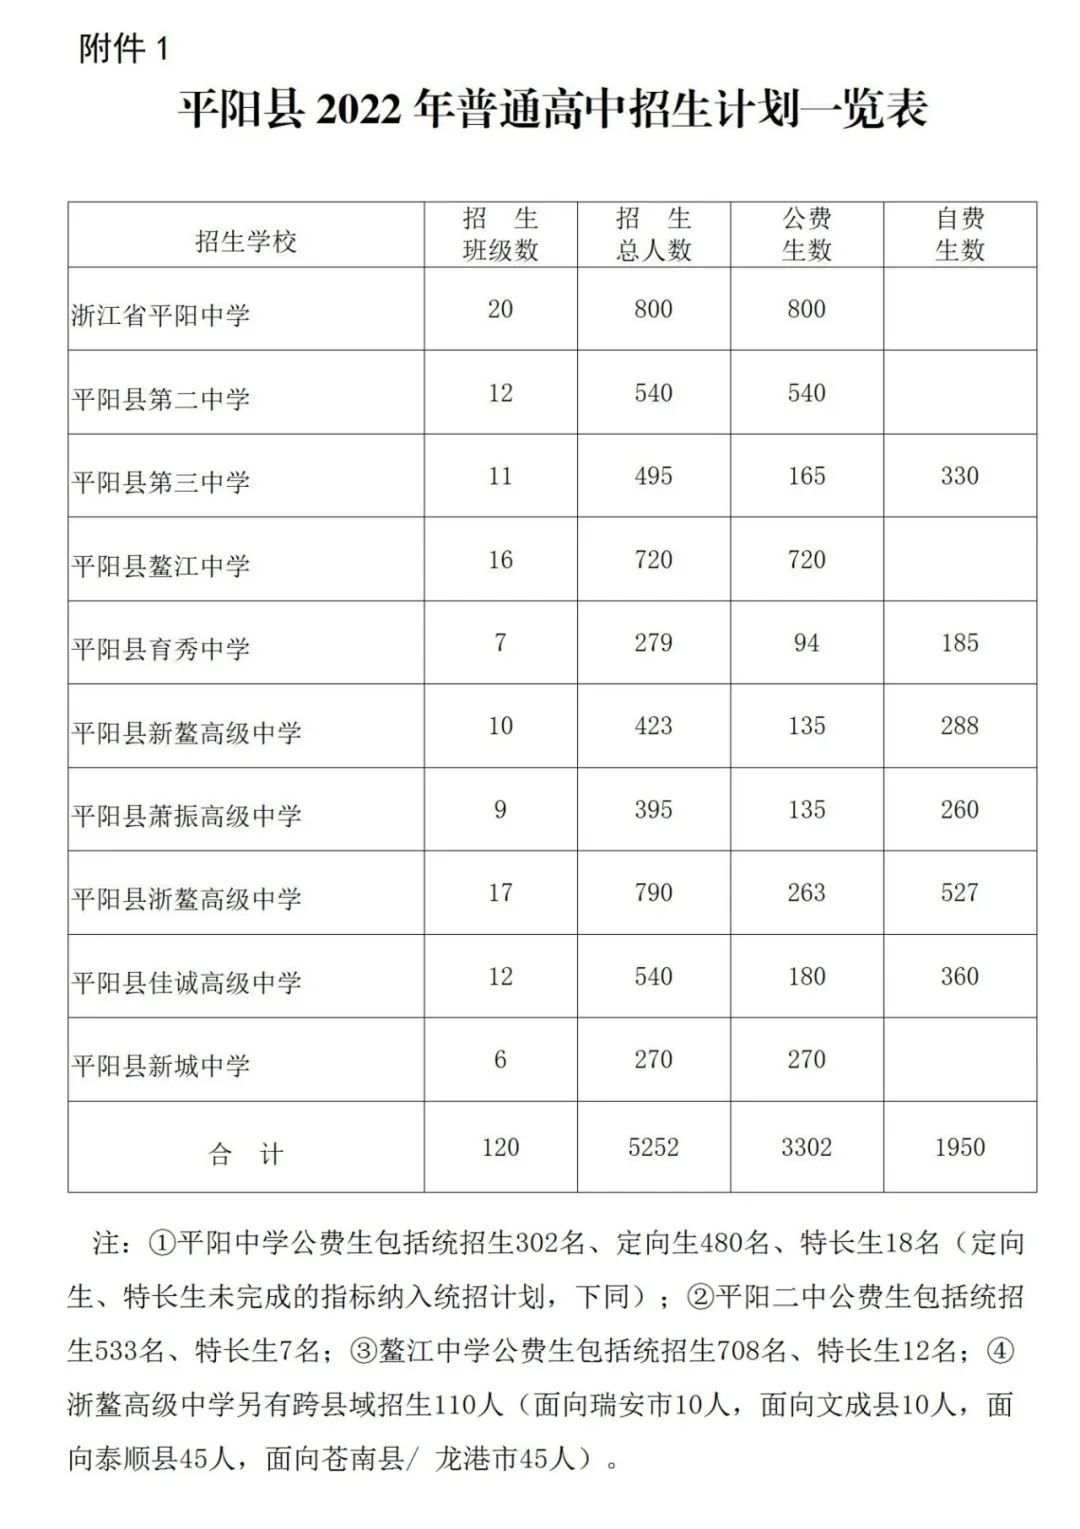 宾阳县领导干部任职前公示（2020年9月10日） - 广西县域经济网